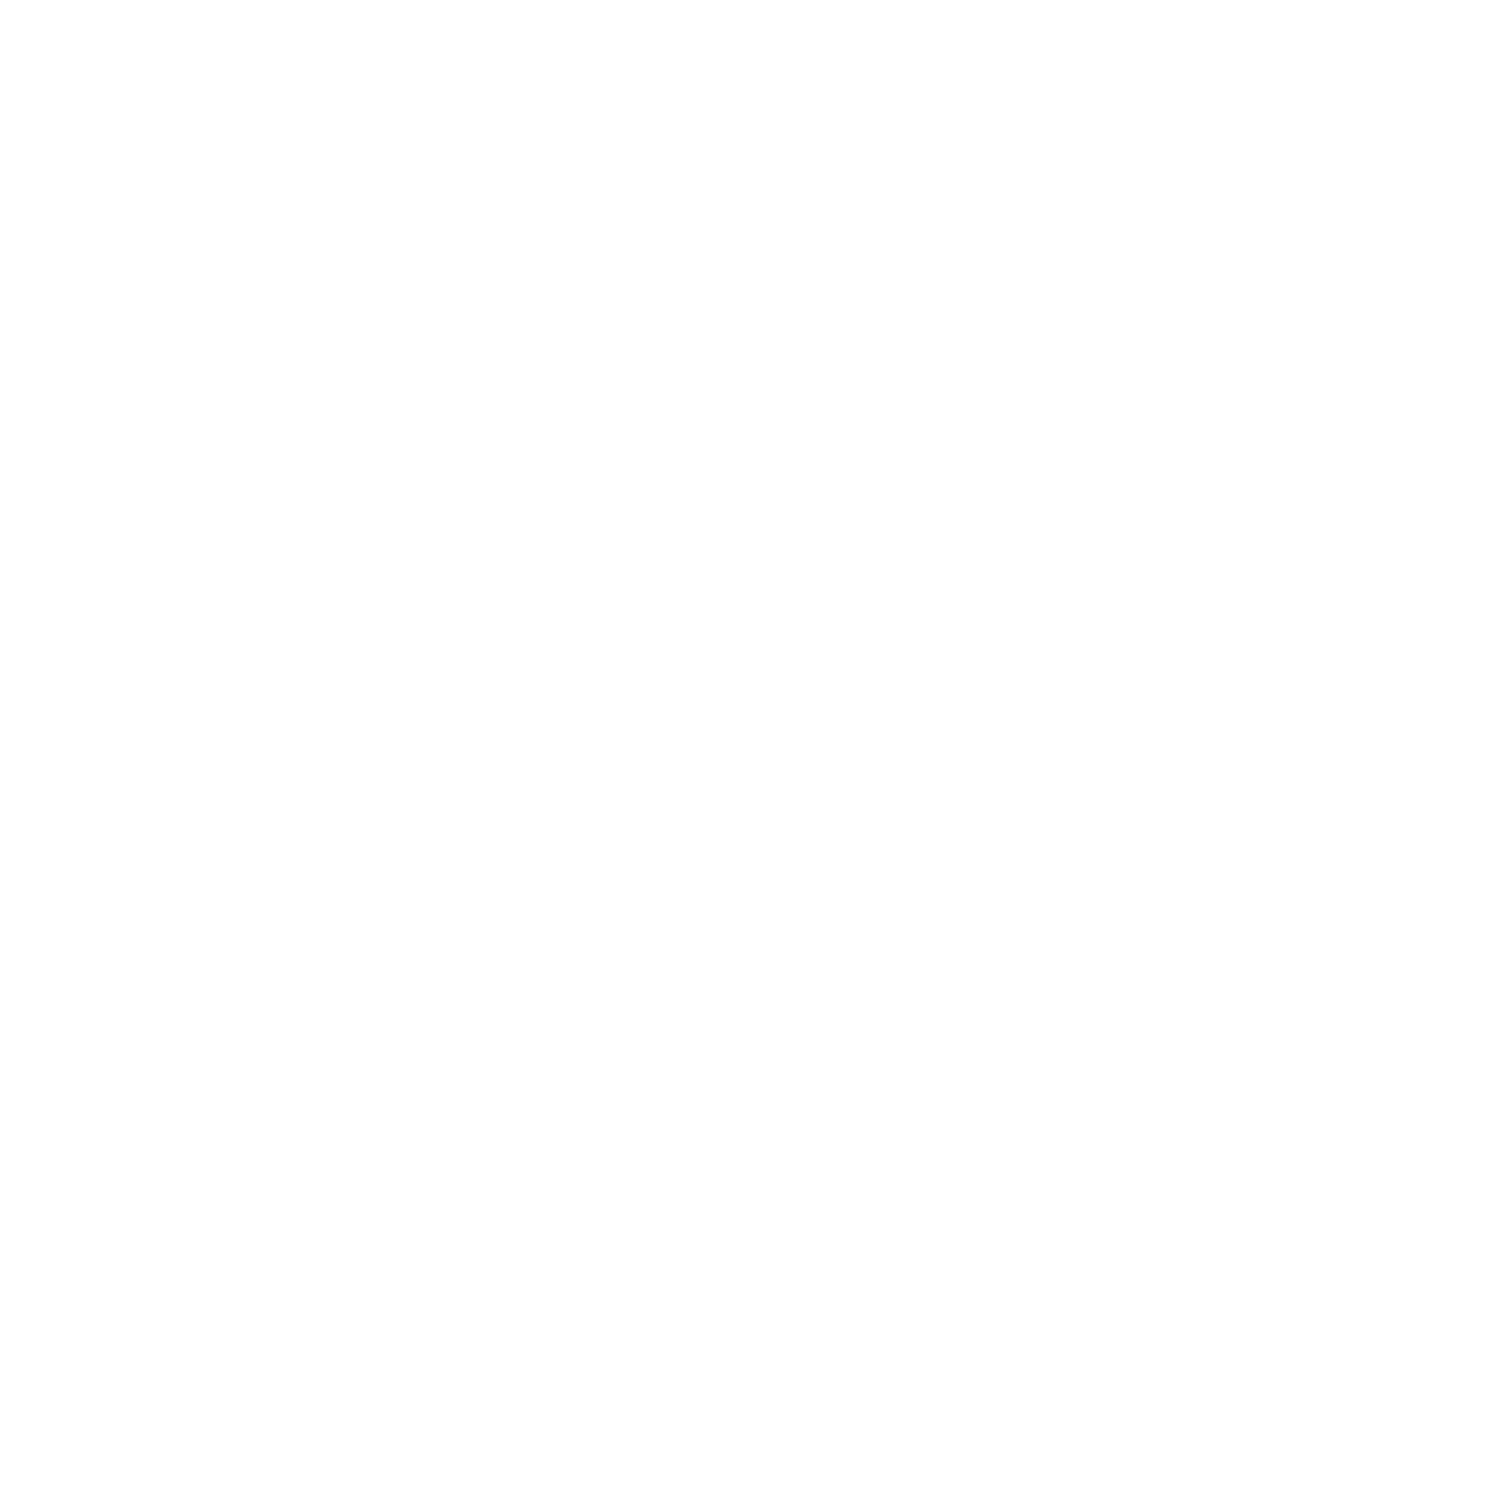 Patriot Ridge Horse Farm